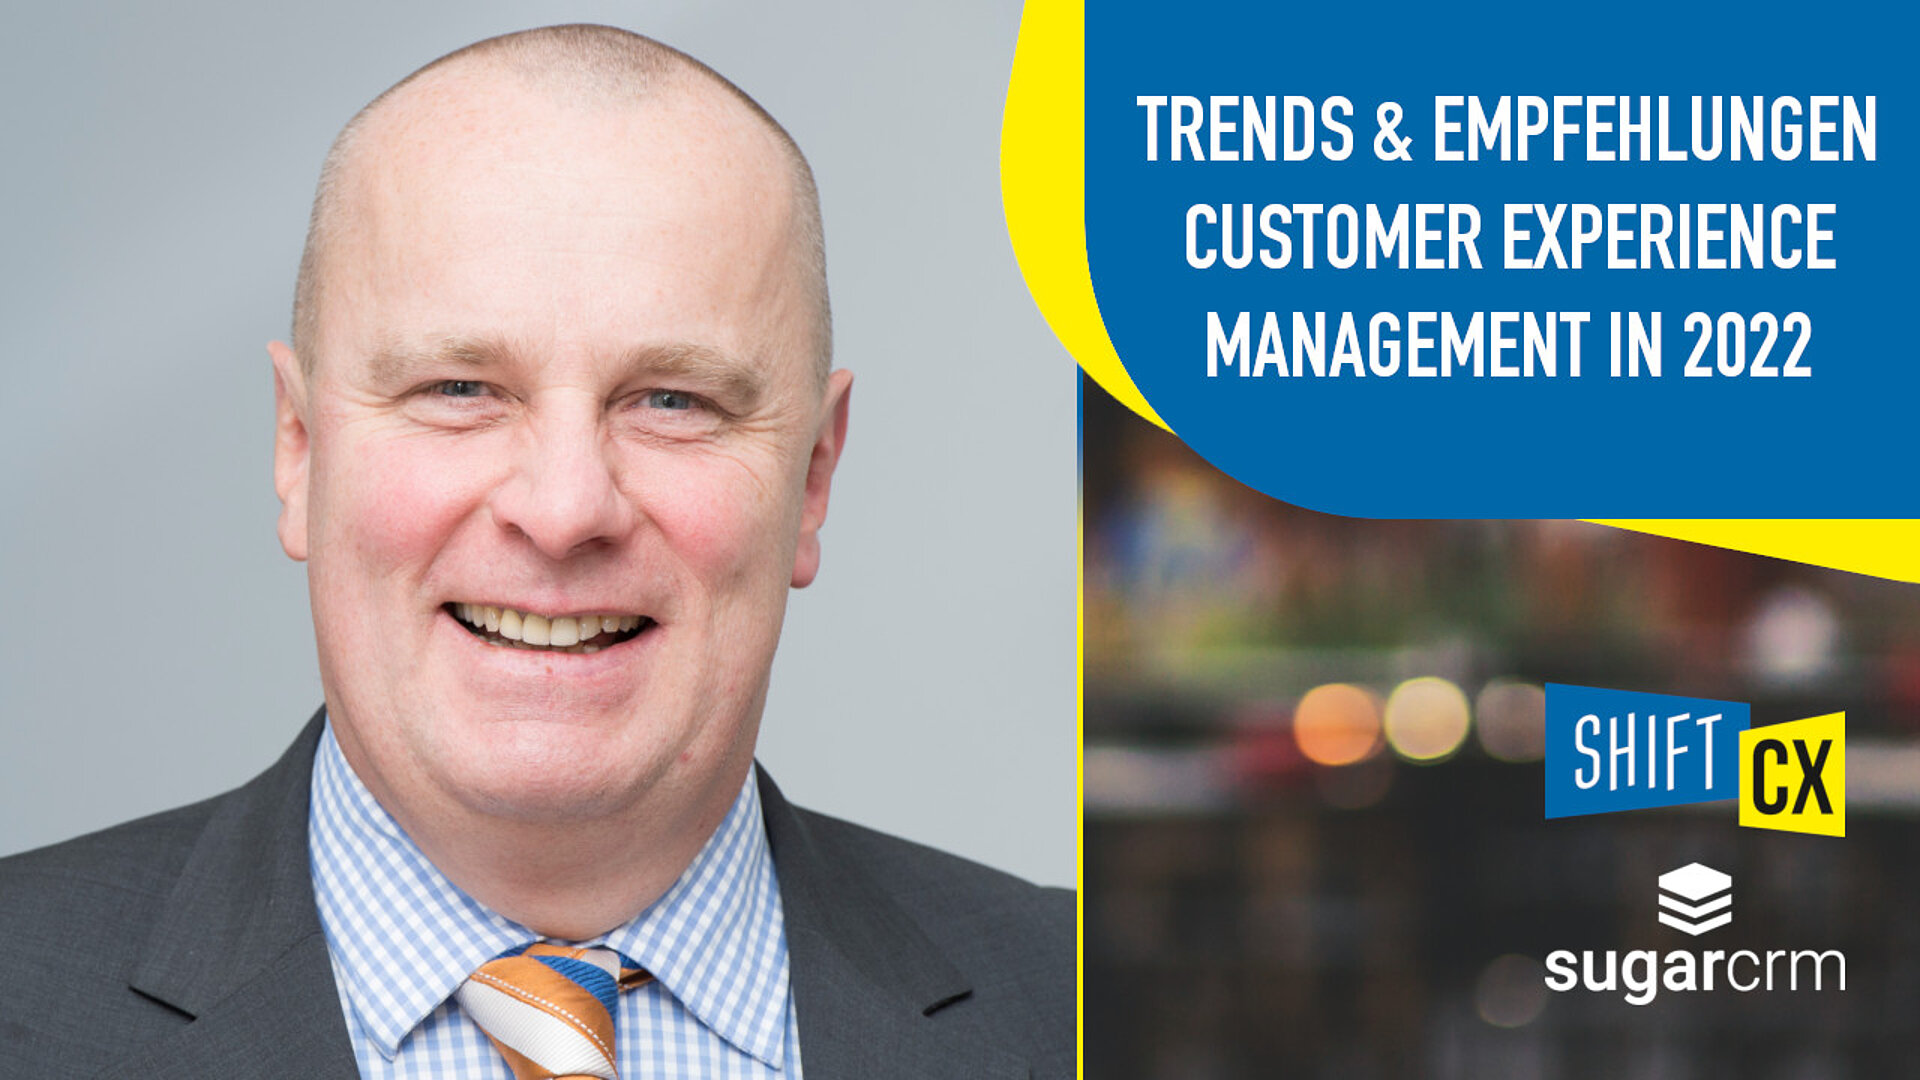 Trends & Empfehlungen für eine bessere Umsetzung beim Customer Experience Management in 2022